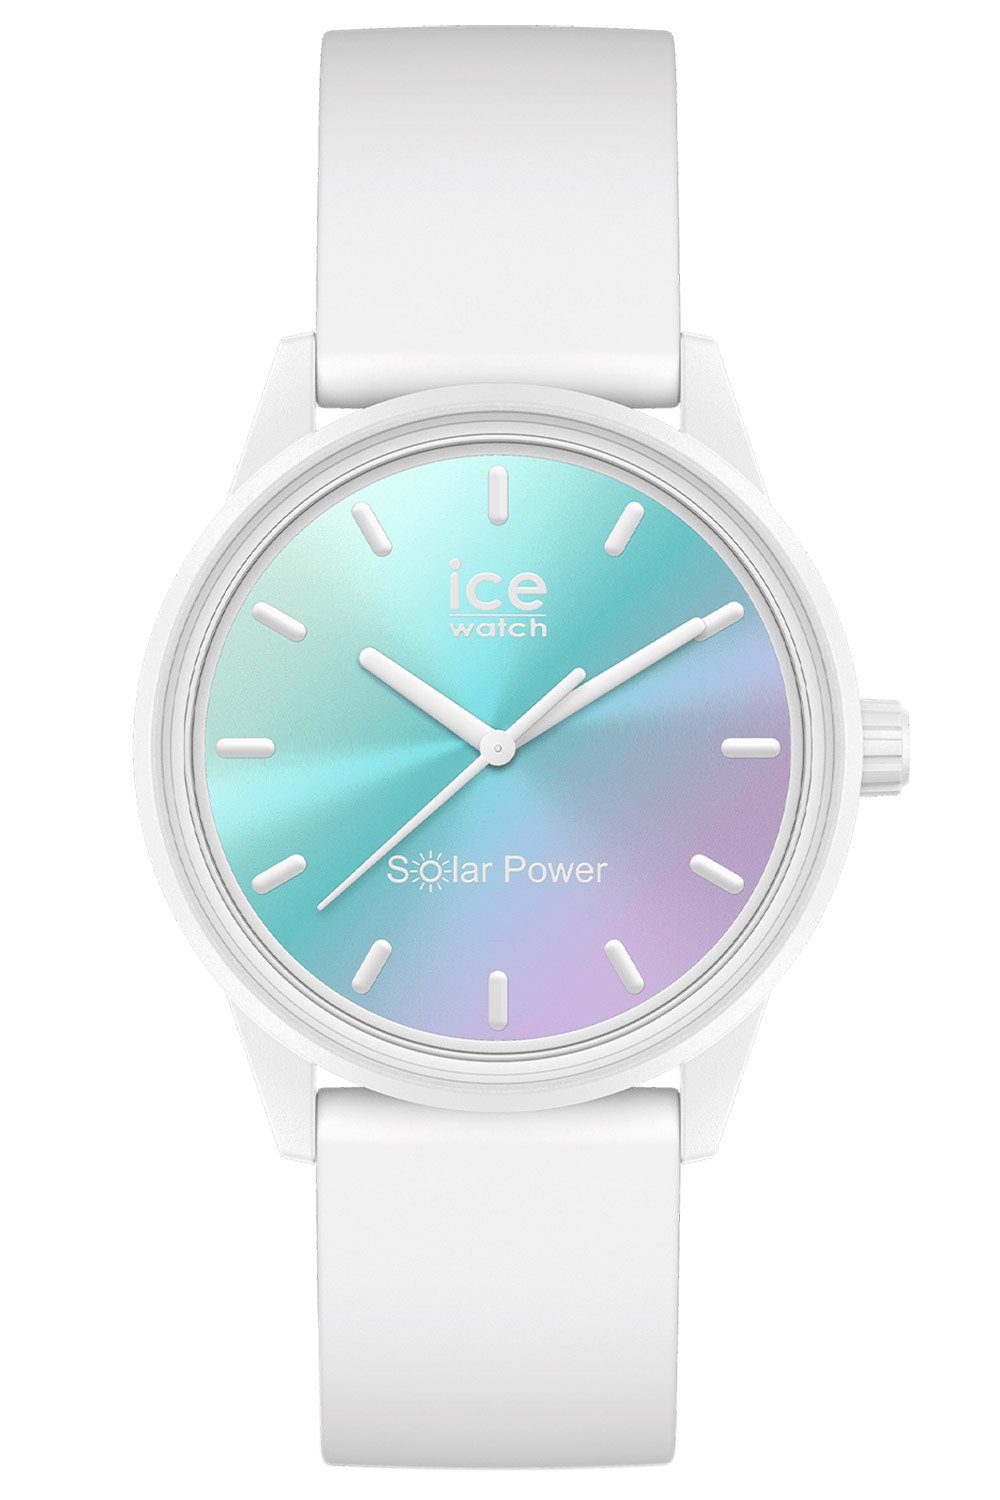 sunset uhrcenter M turquoise ICE 020649 • Ice-Watch Solar Power Lilac Armbanduhr